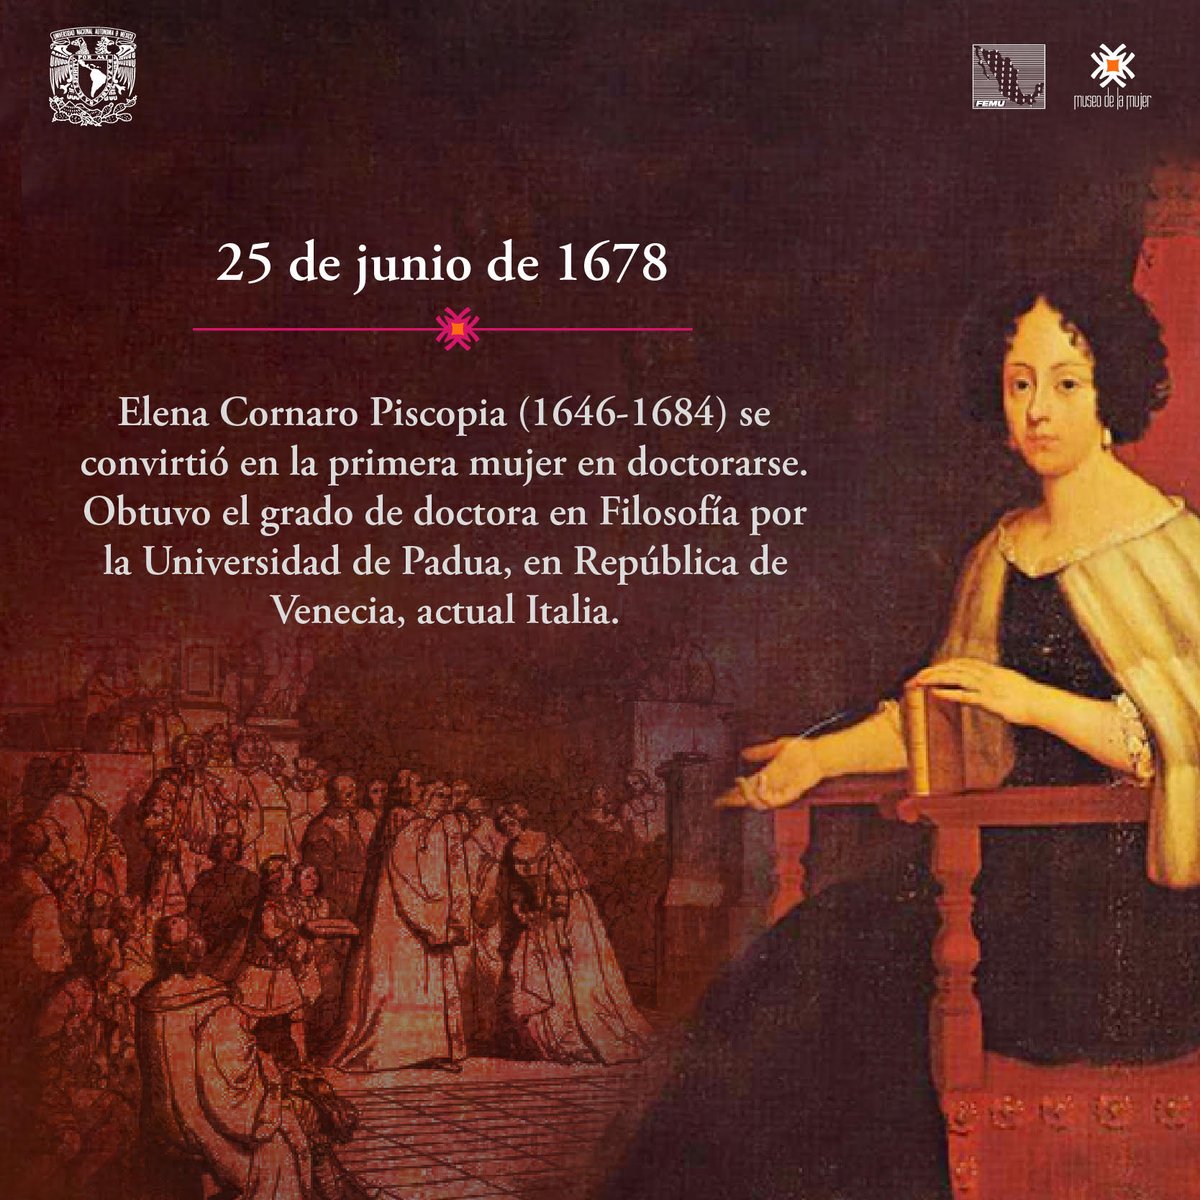 Museo de la Mujer a Twitteren: "El 25 de junio de 1678, Elena Cornaro Piscopia (1646-1684) se convirtió en la primera mujer en doctorarse 👩🏻‍🎓♀️ Obtuvo el grado de doctora en Filosofía